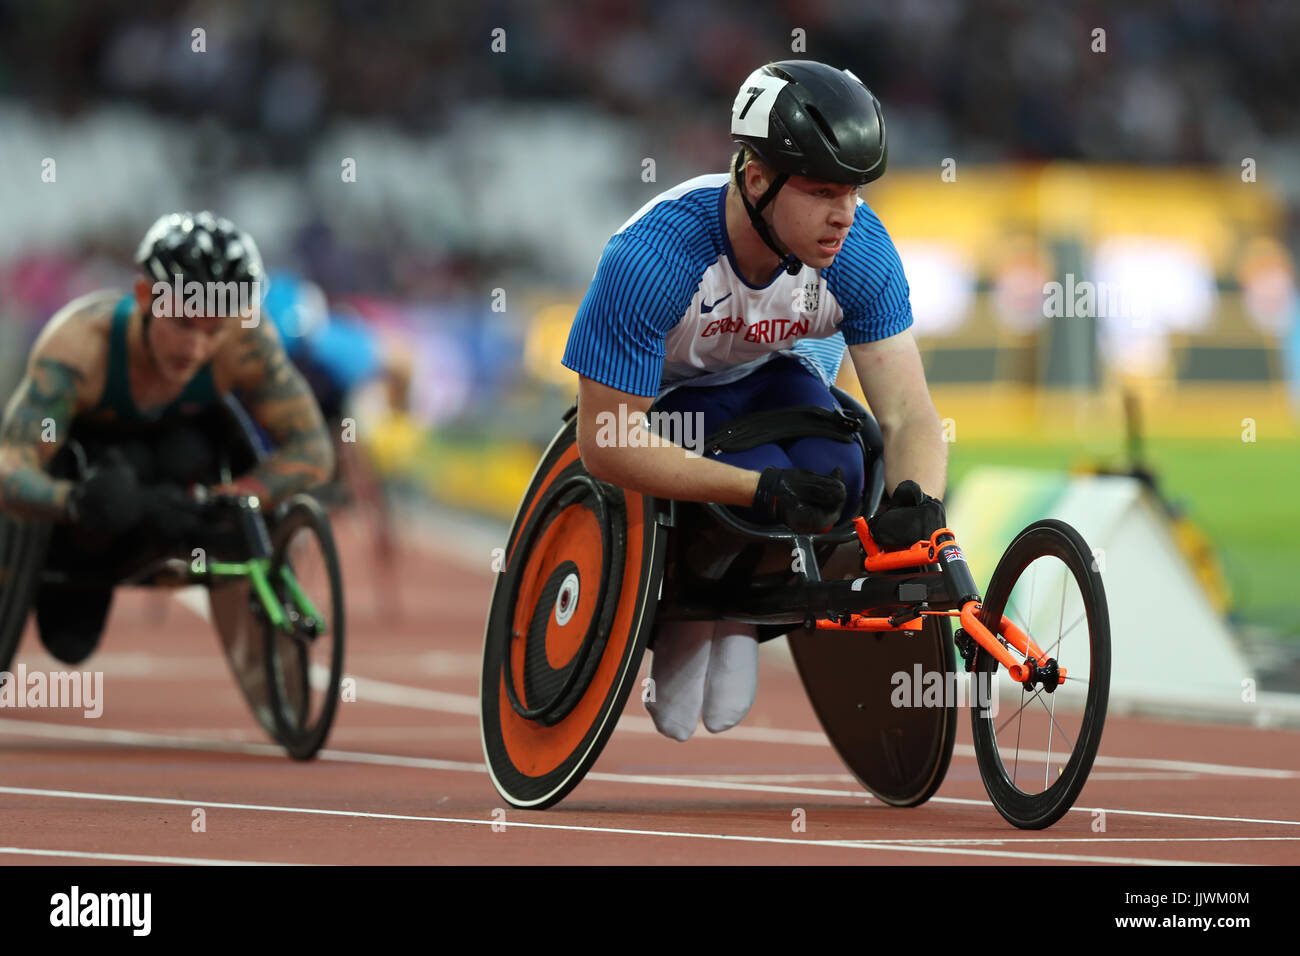 Bronze-Großbritanniens Isaac Türme auf dem Weg zum Sieg in der Männer 800 m-Finale T34 tagsüber sieben der 2017 Para Leichtathletik-Weltmeisterschaften in London Stadion. Stockfoto